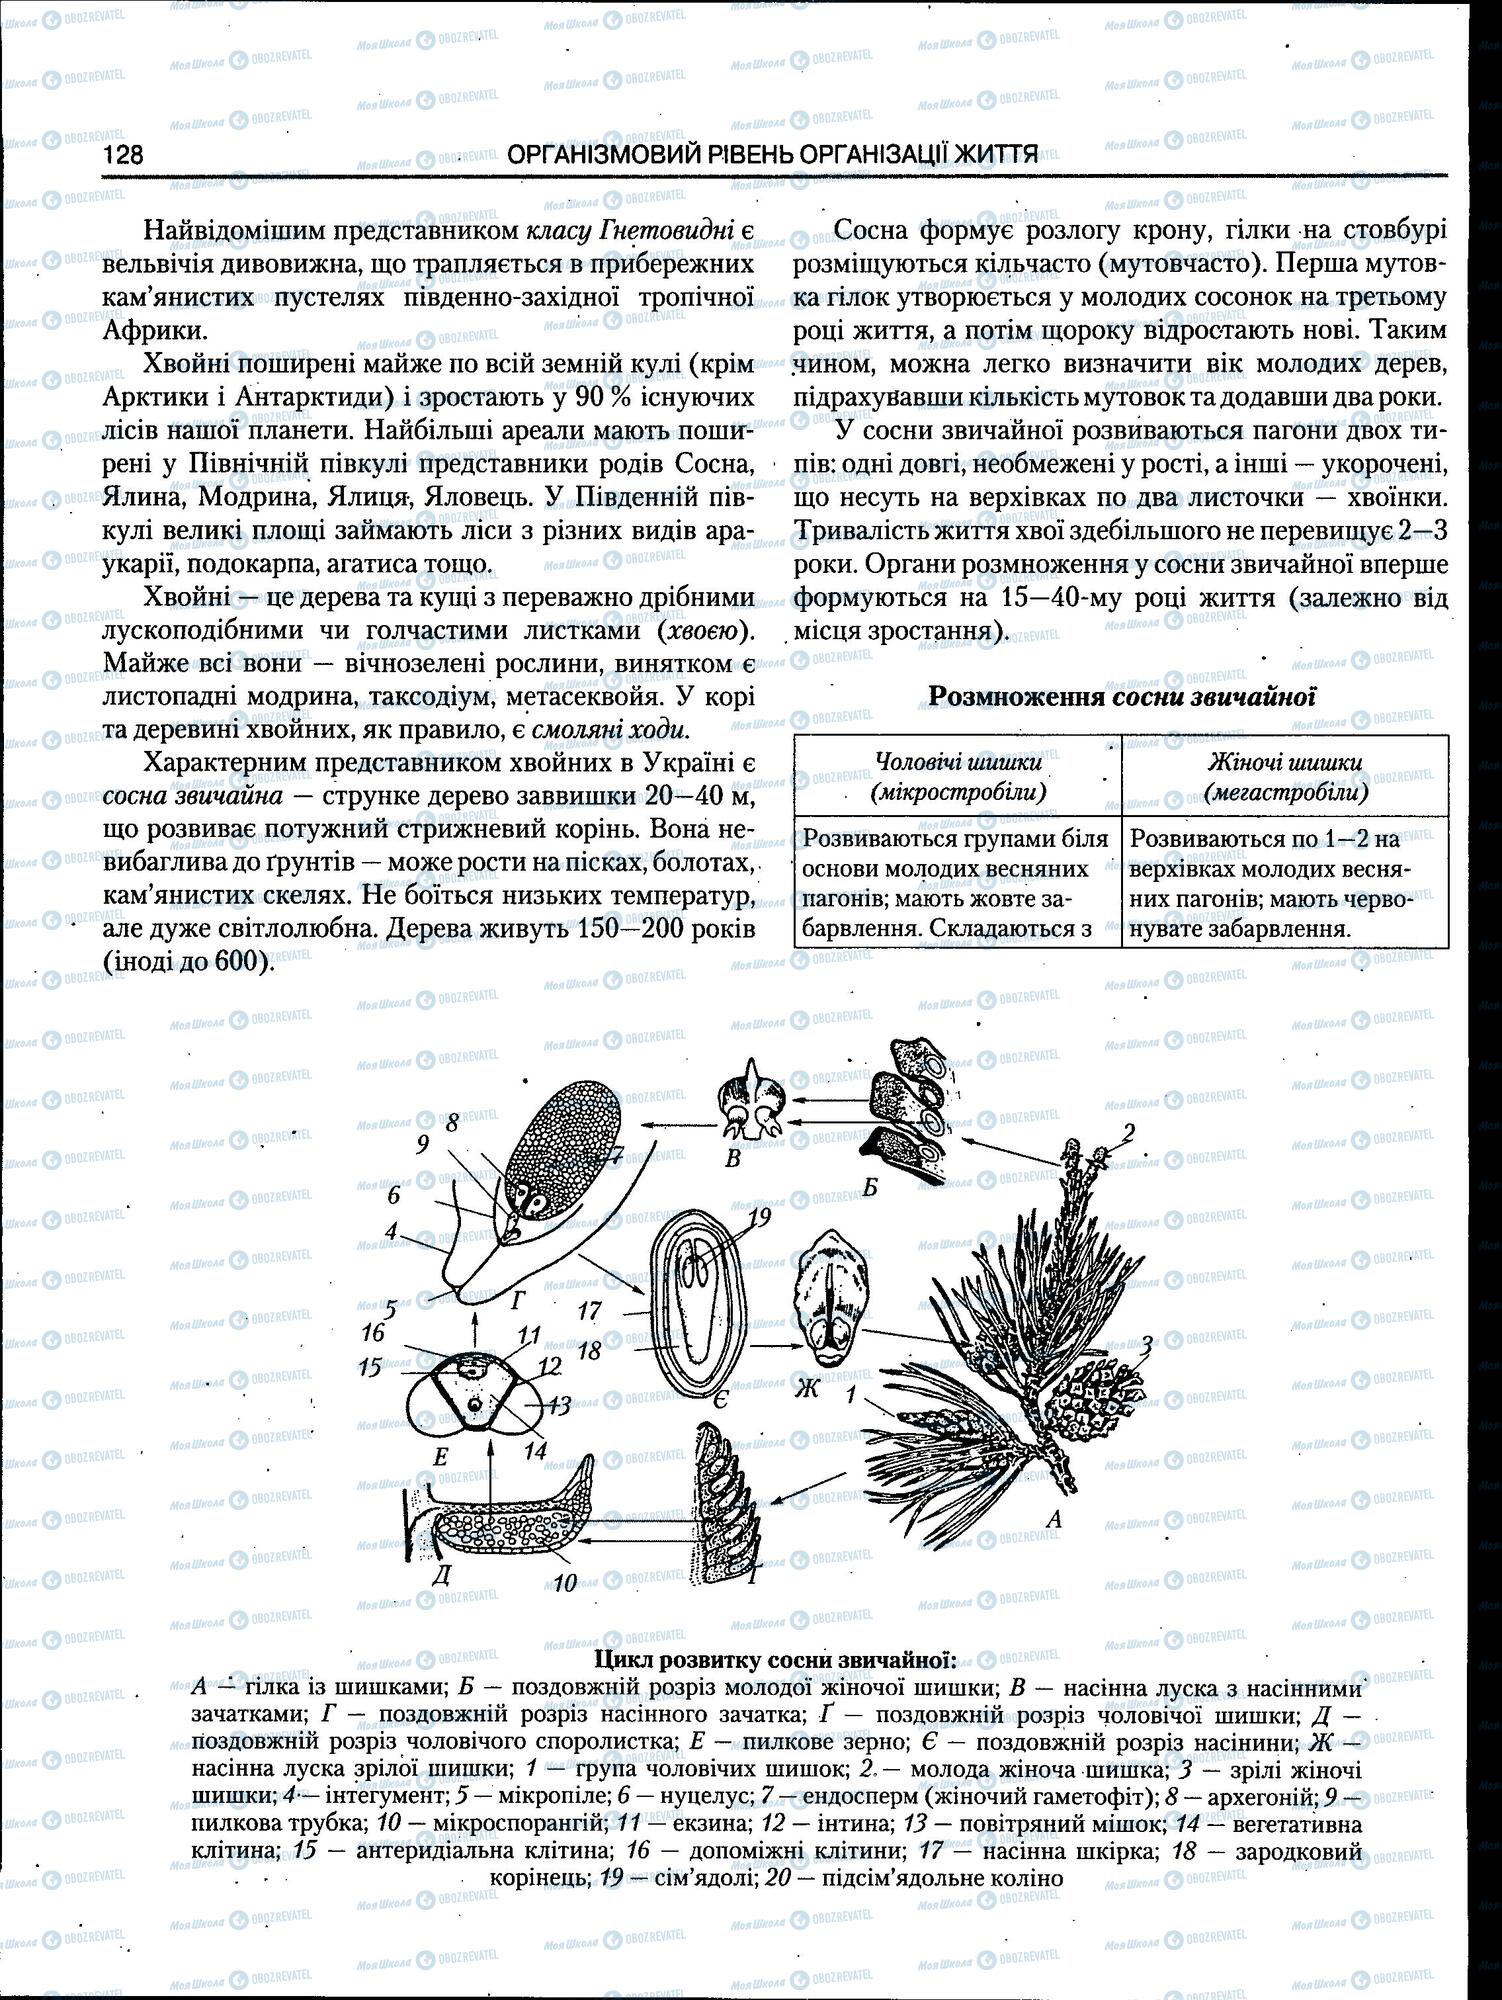 ЗНО Биология 11 класс страница 128